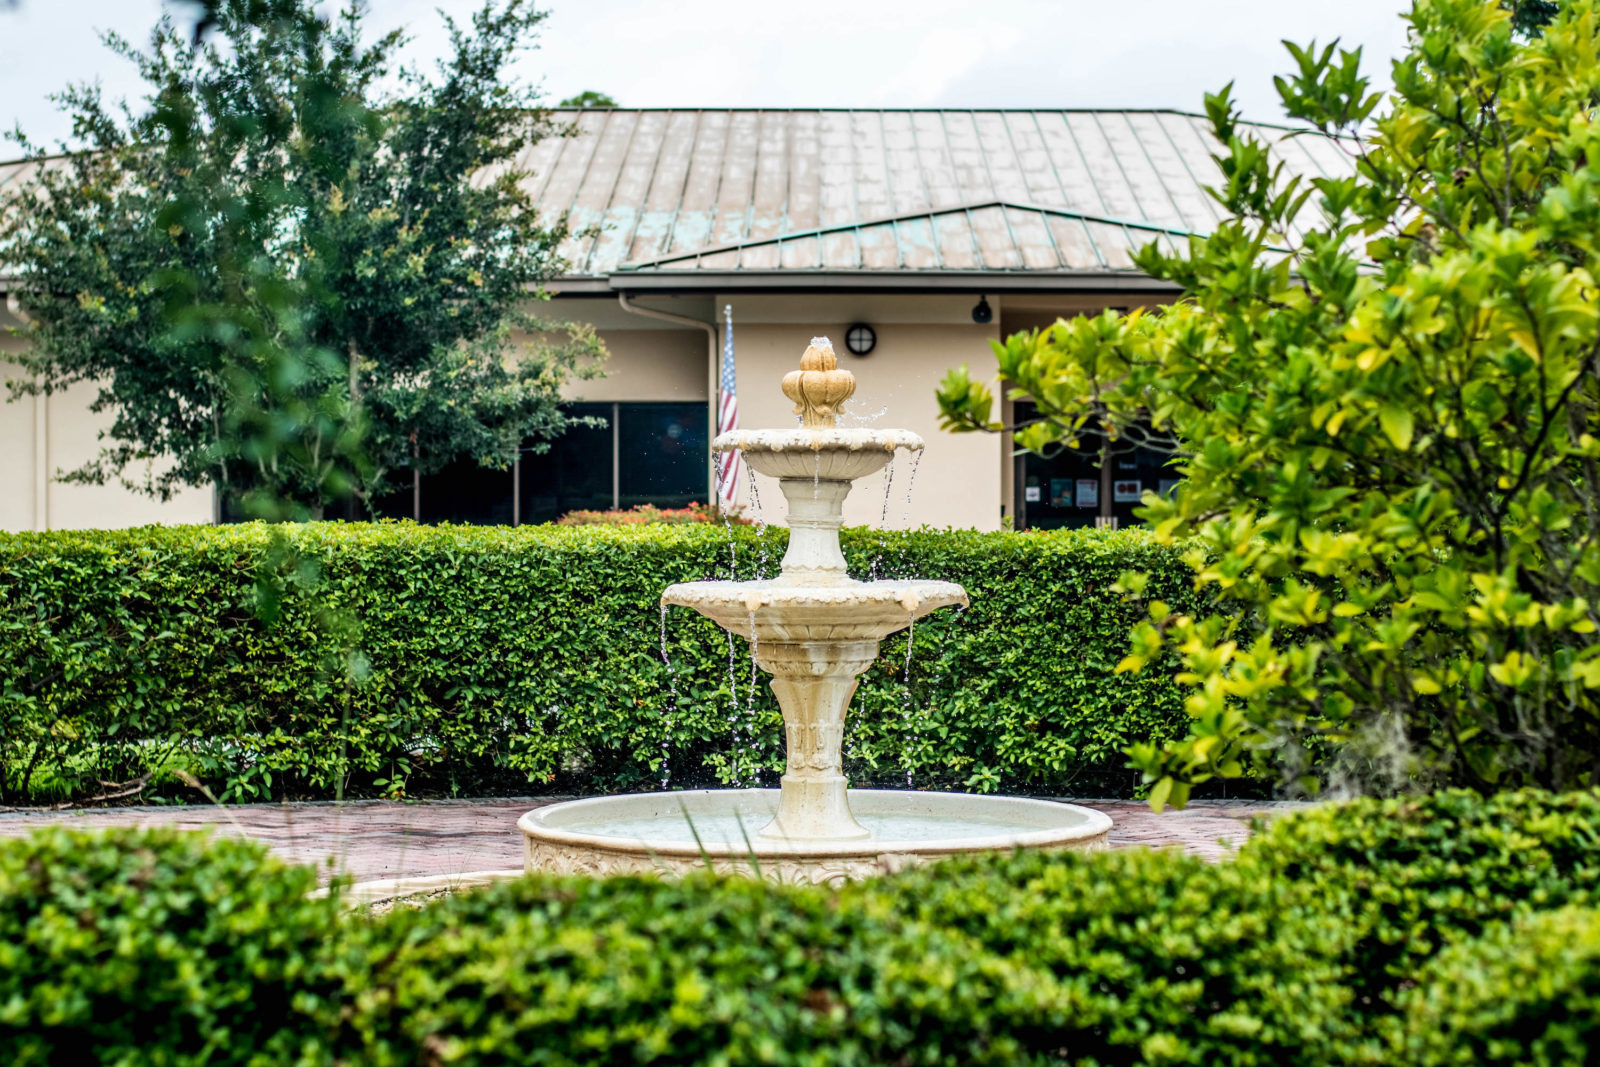 Fountain in an outdoor area of The Gardens at DePugh Nursing Center.